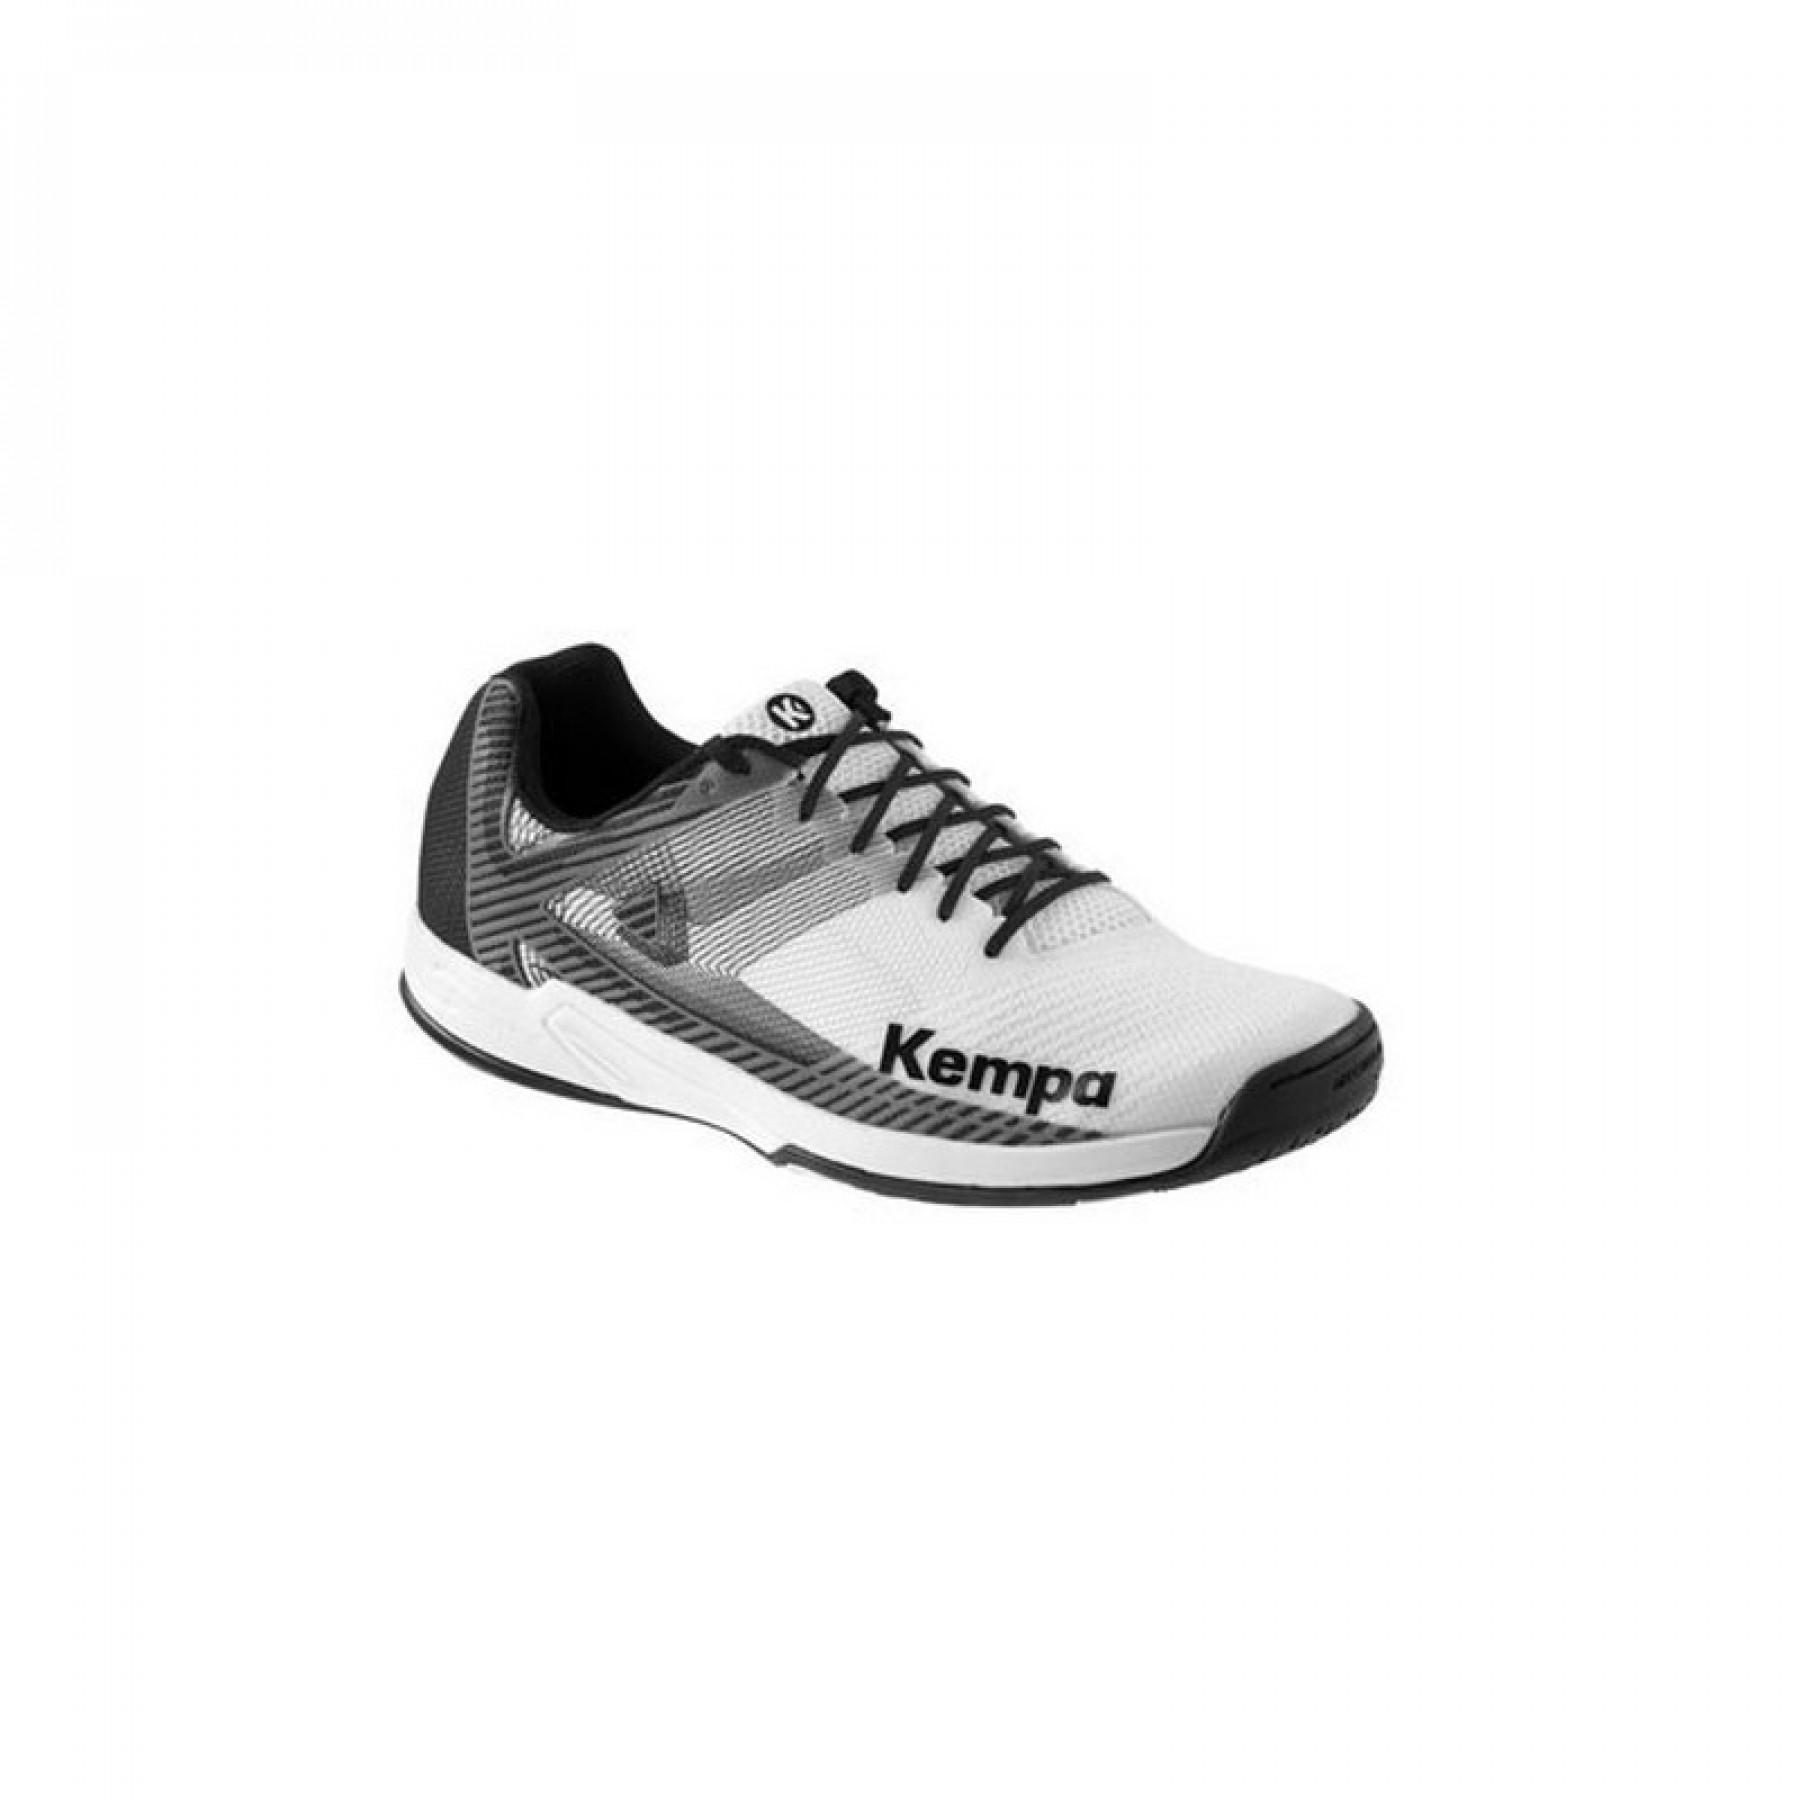 Kempa Wing Chaussures de Handball Homme 